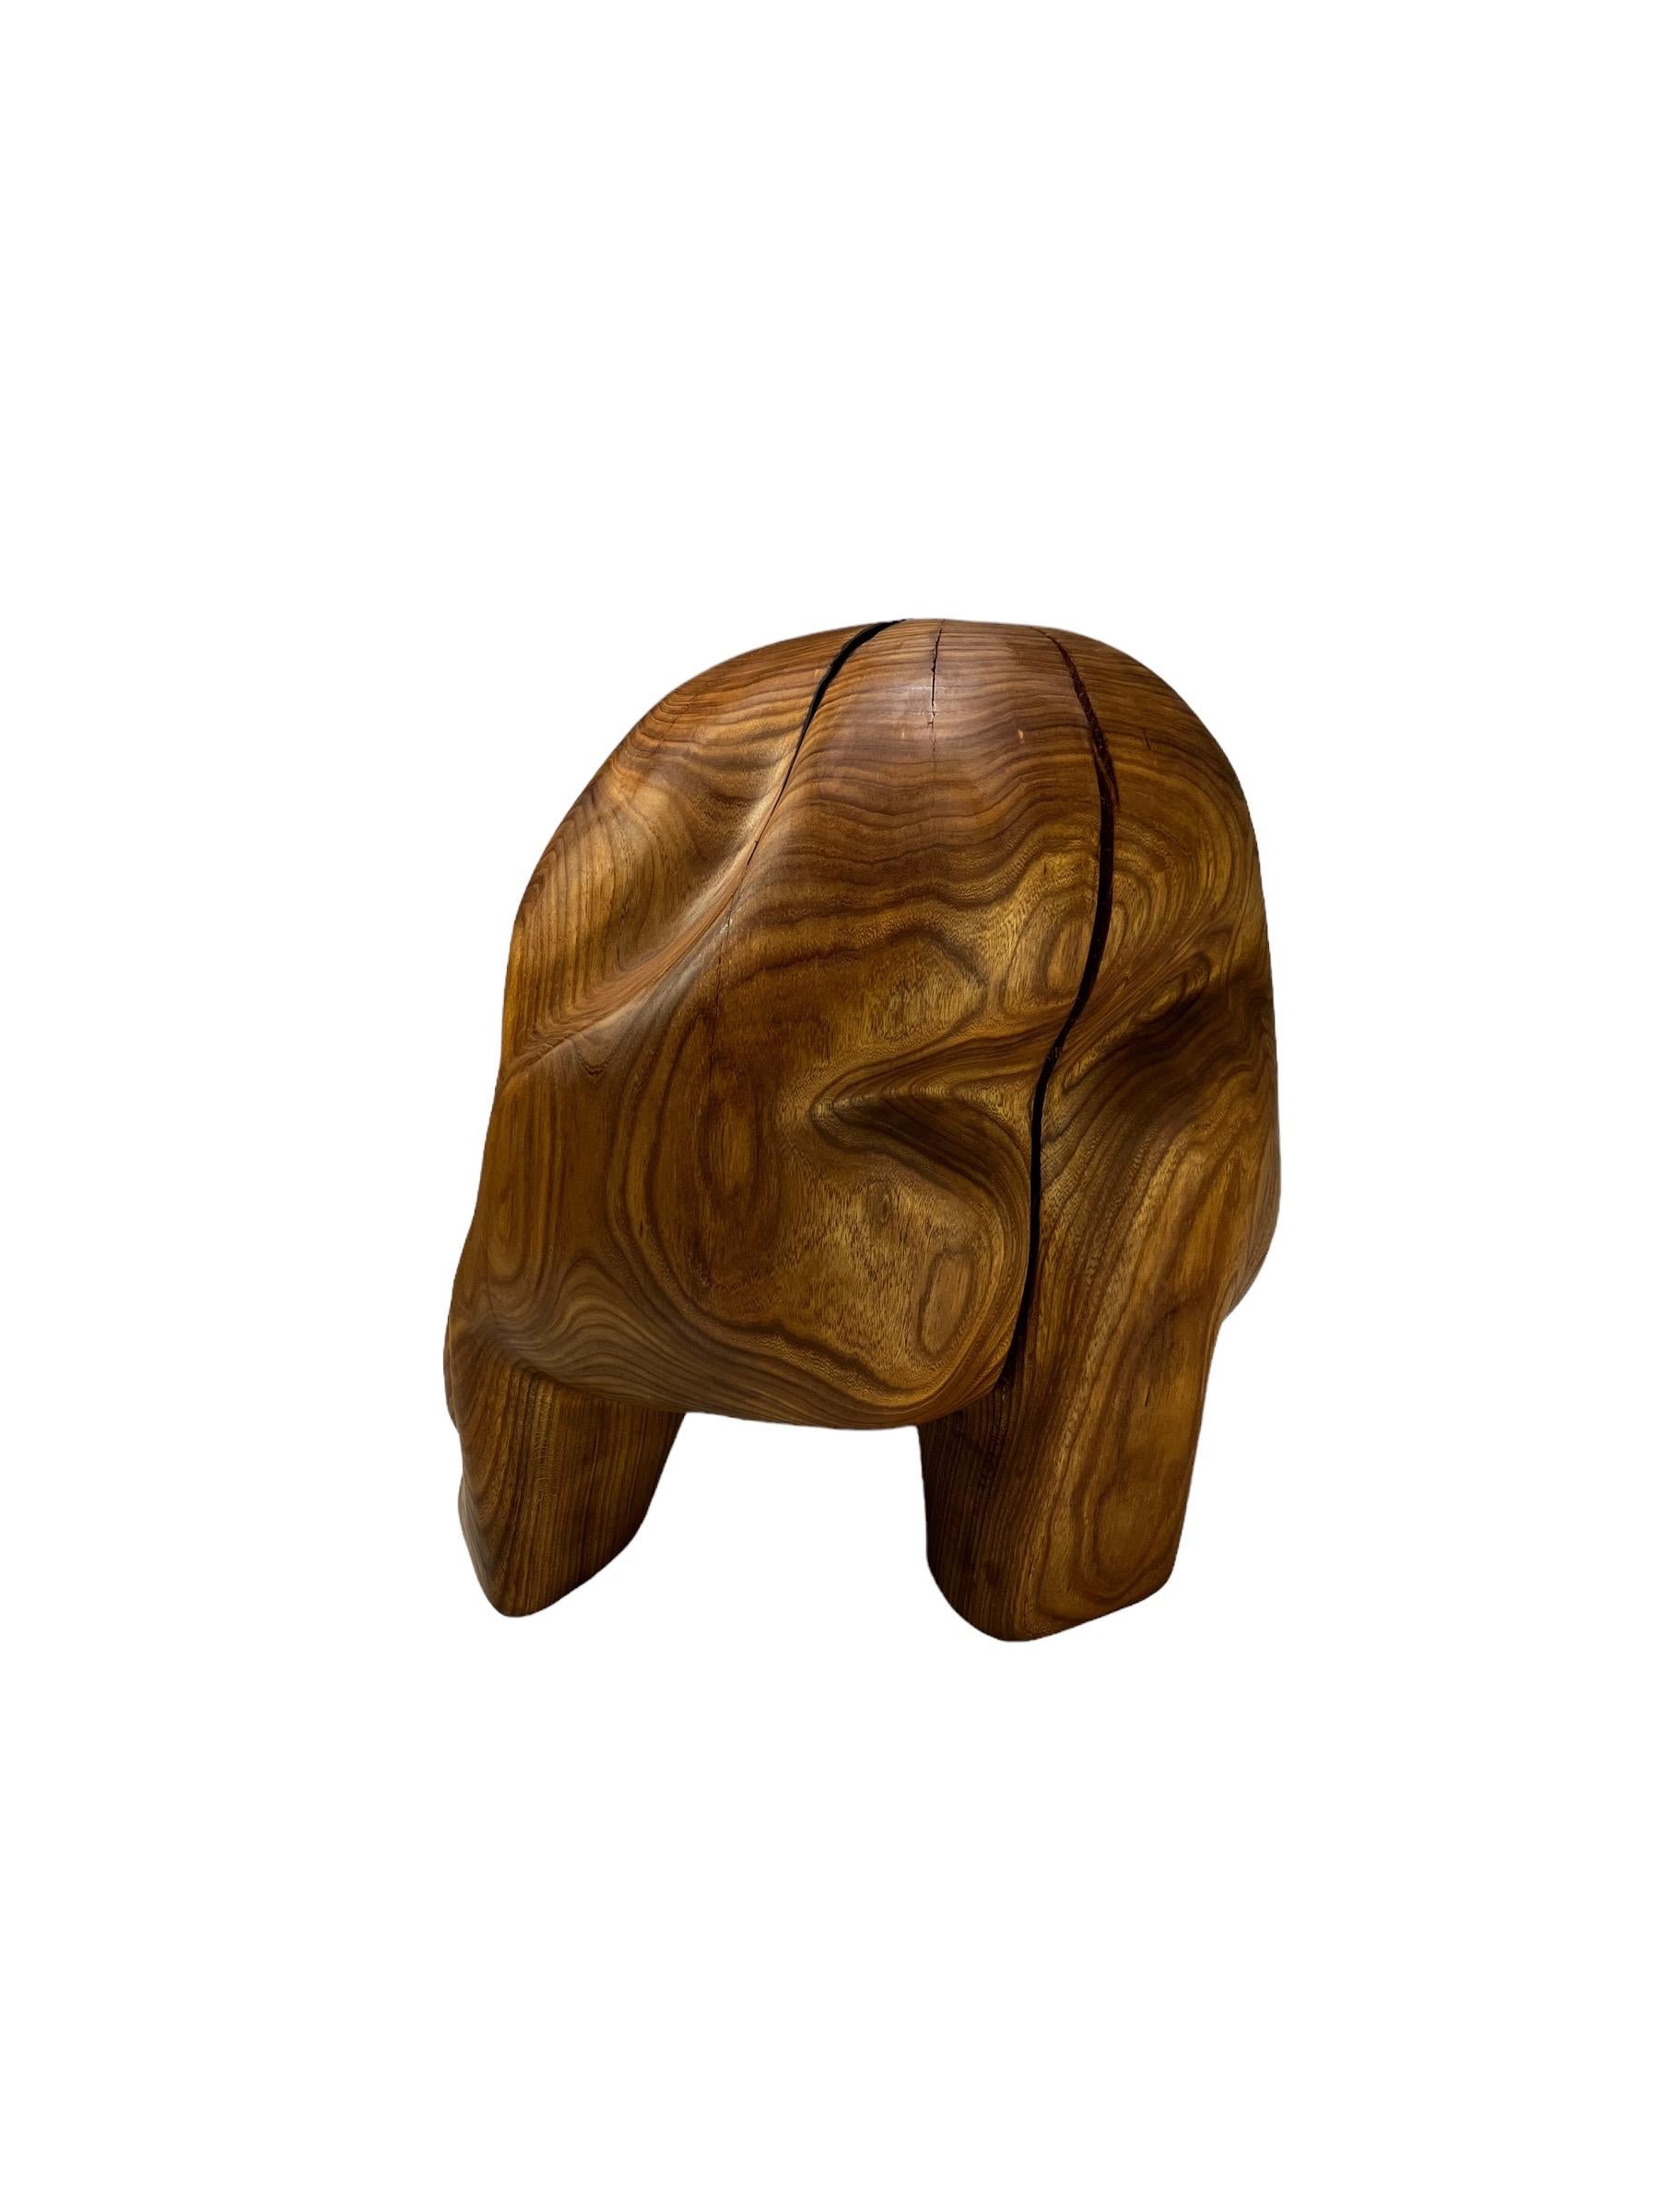 Suédois Tabouret sculptural contemporain en bois sculpté 